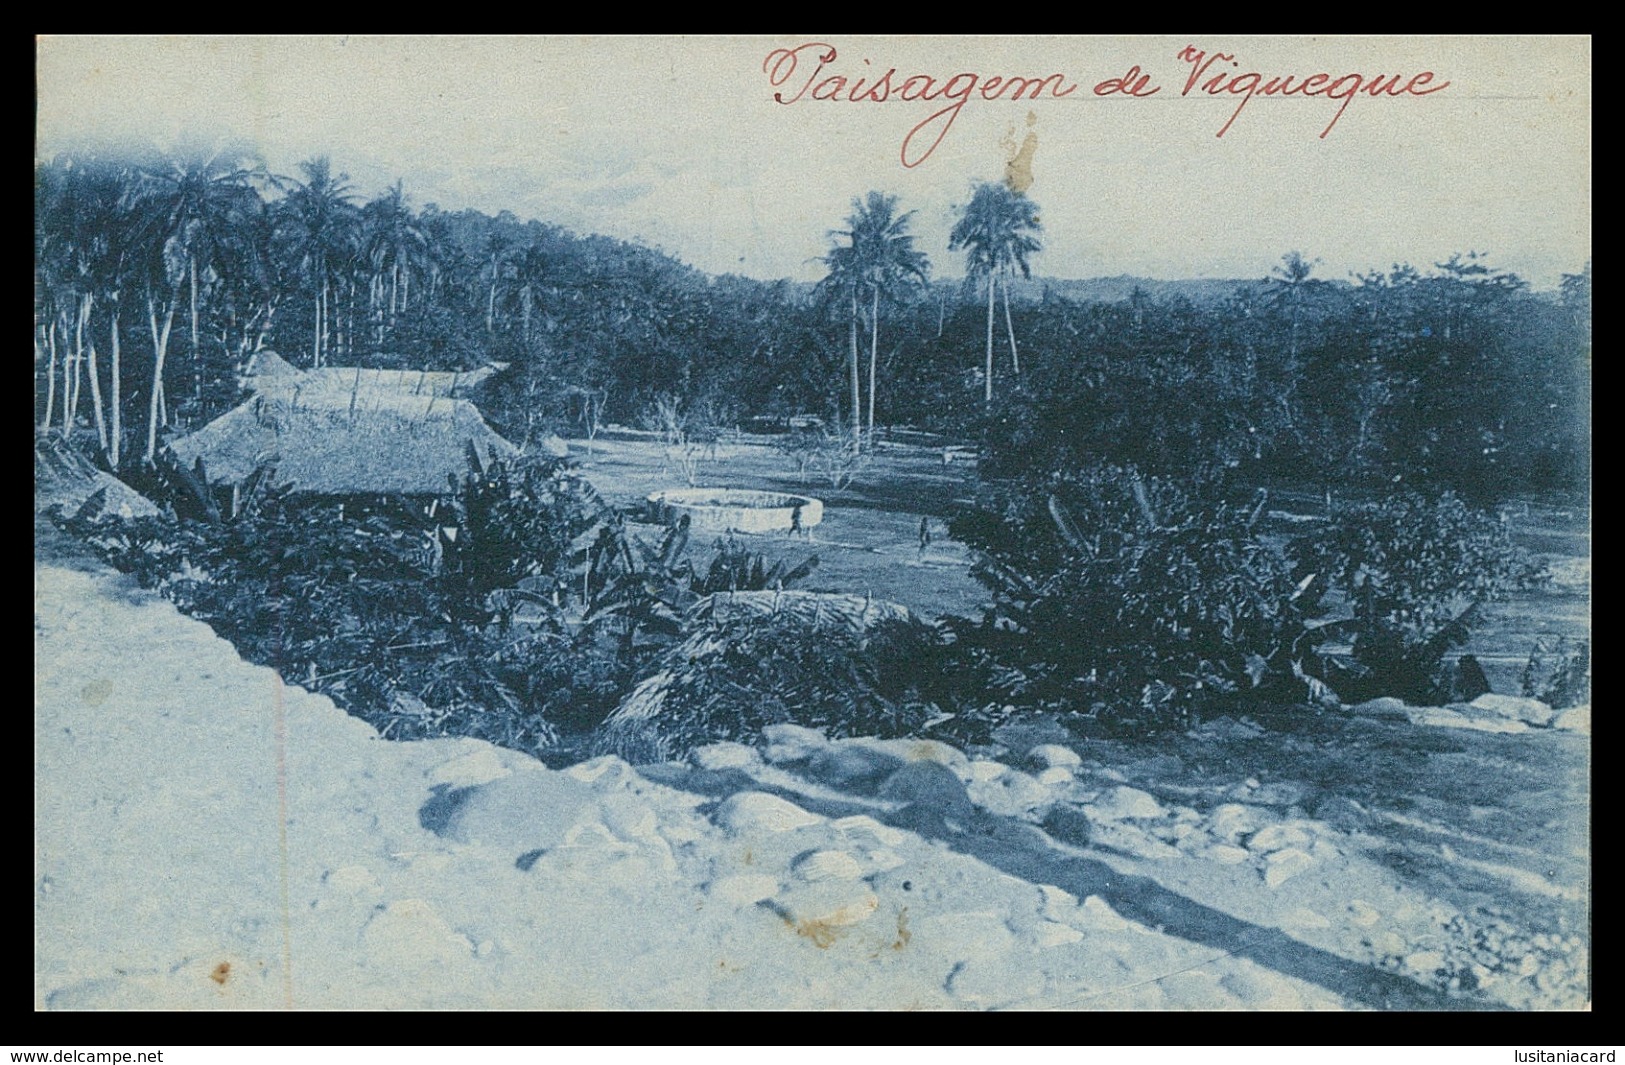 TIMOR - VIQUEQUE - Uma Paisagem De Viqueque. ( Ed. Da Missão)  Carte Postale - Oost-Timor